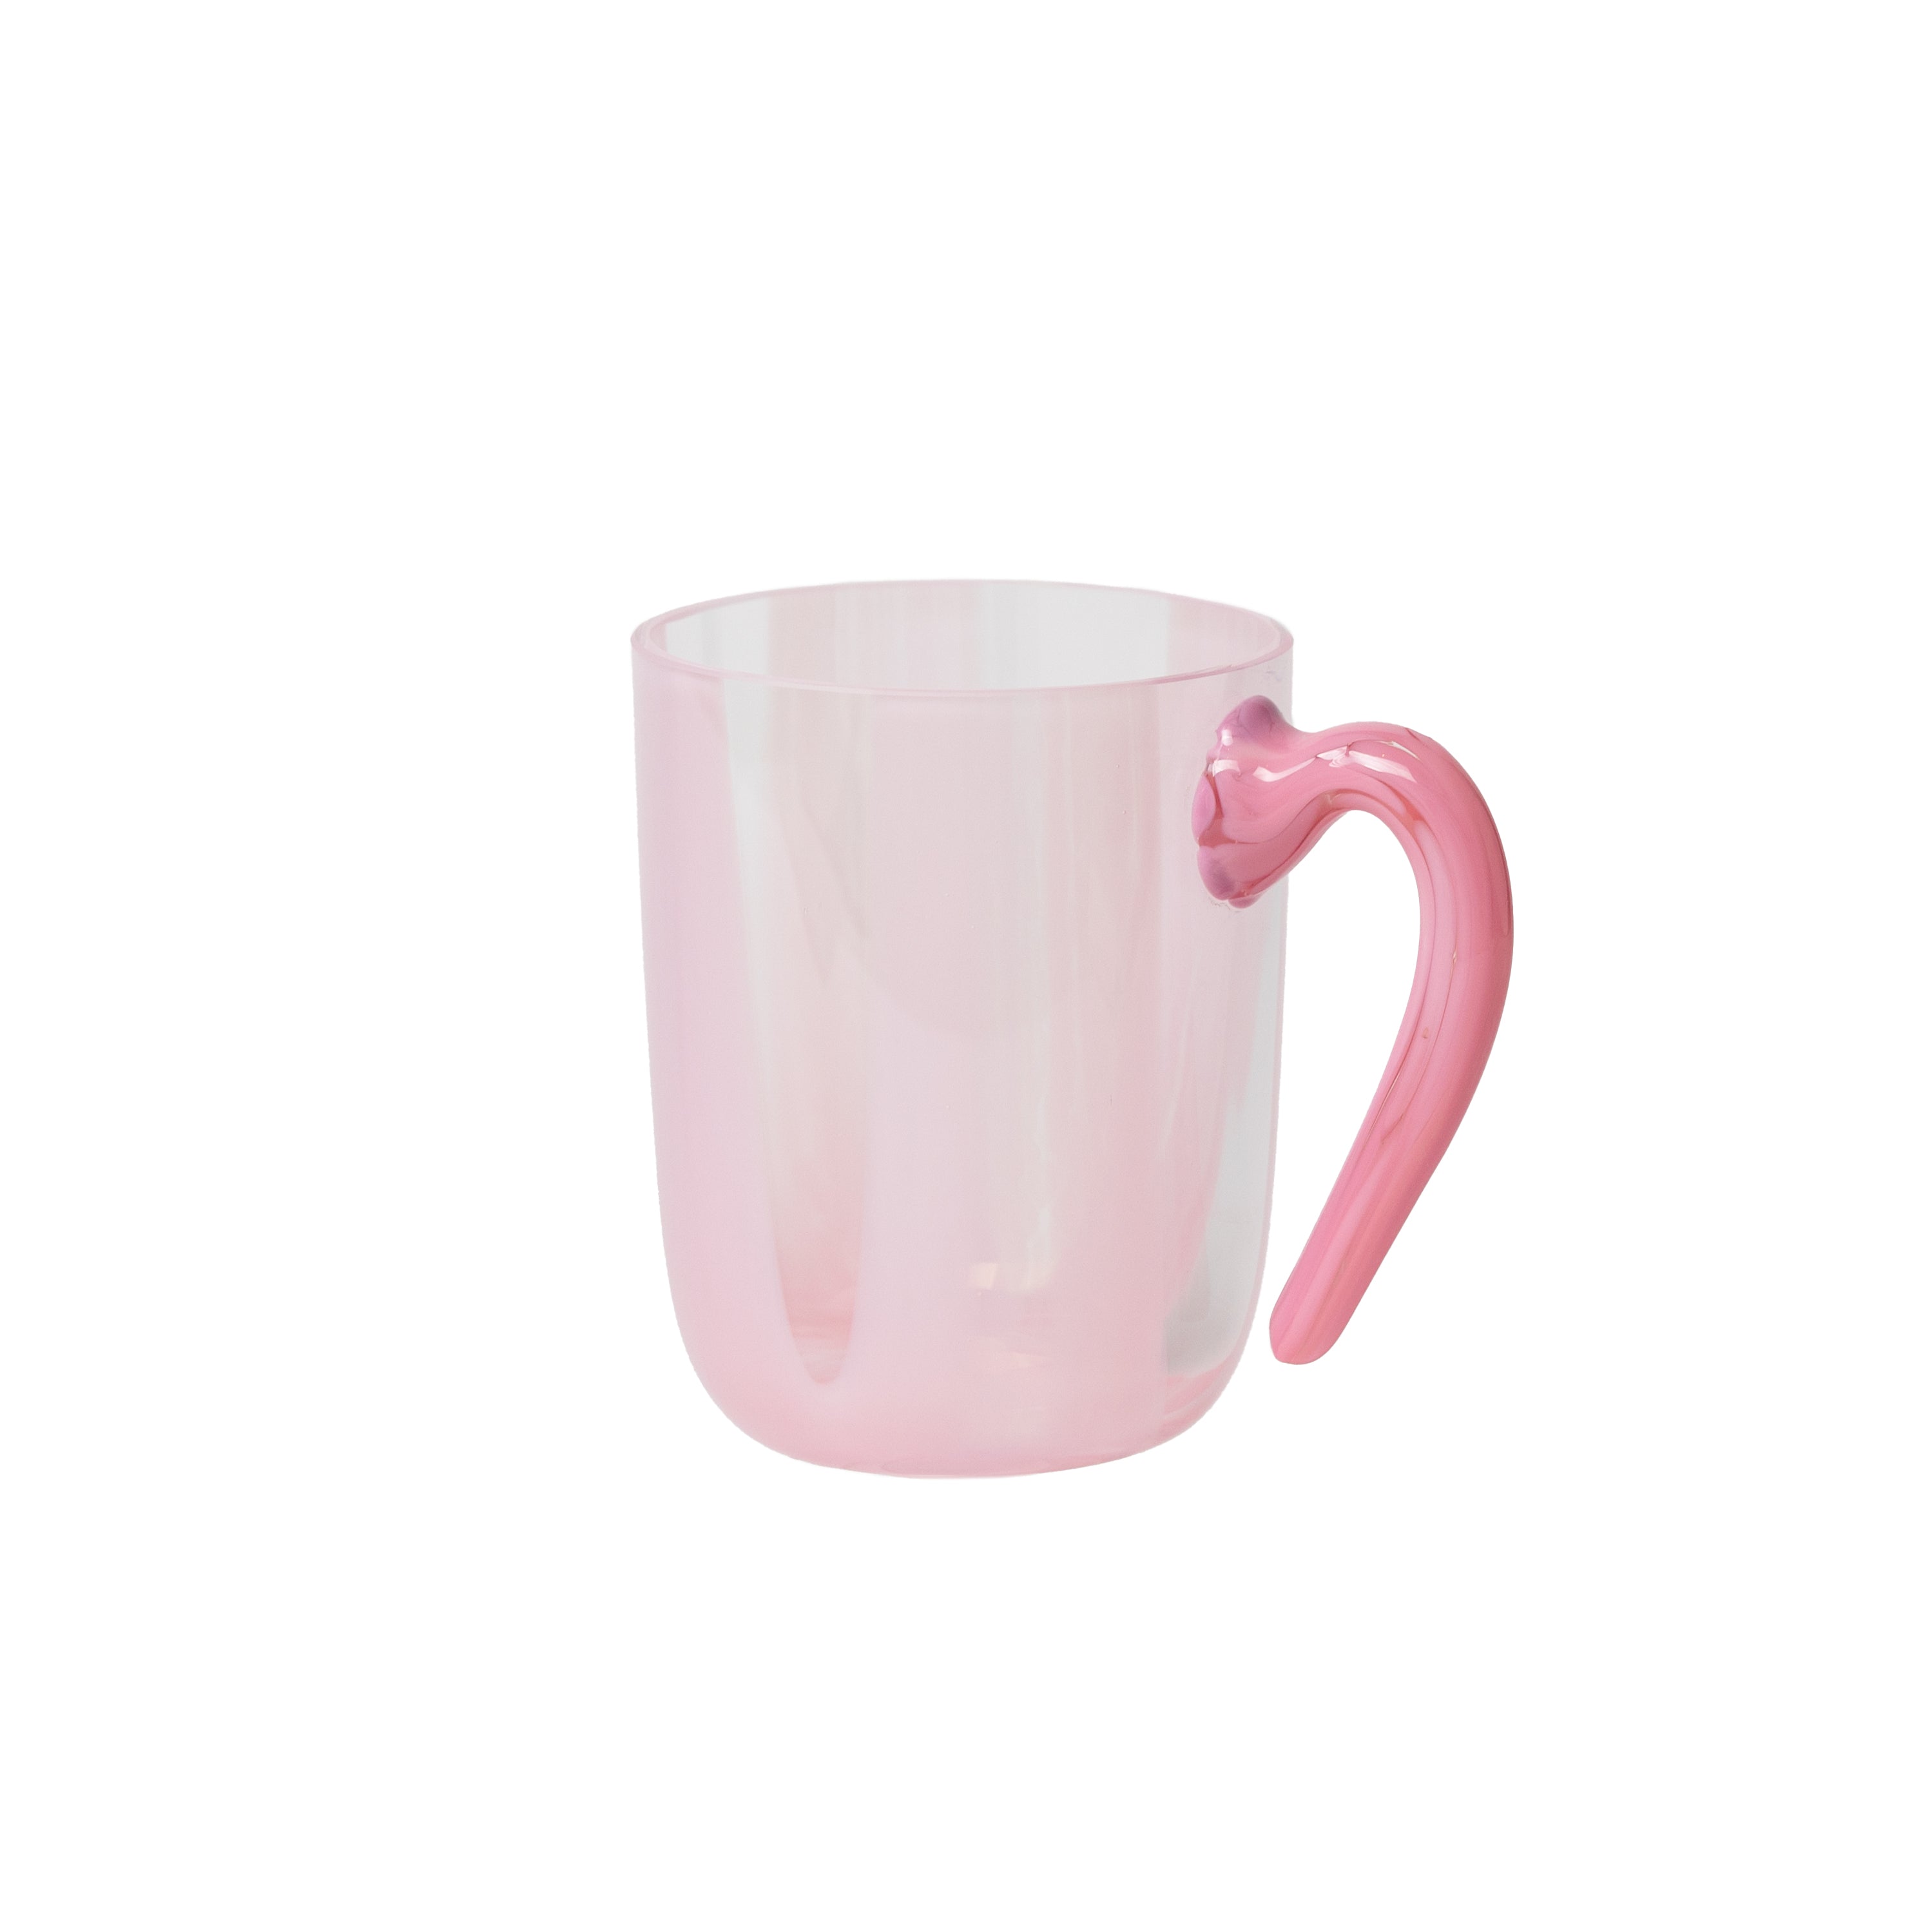 Pink glass mug